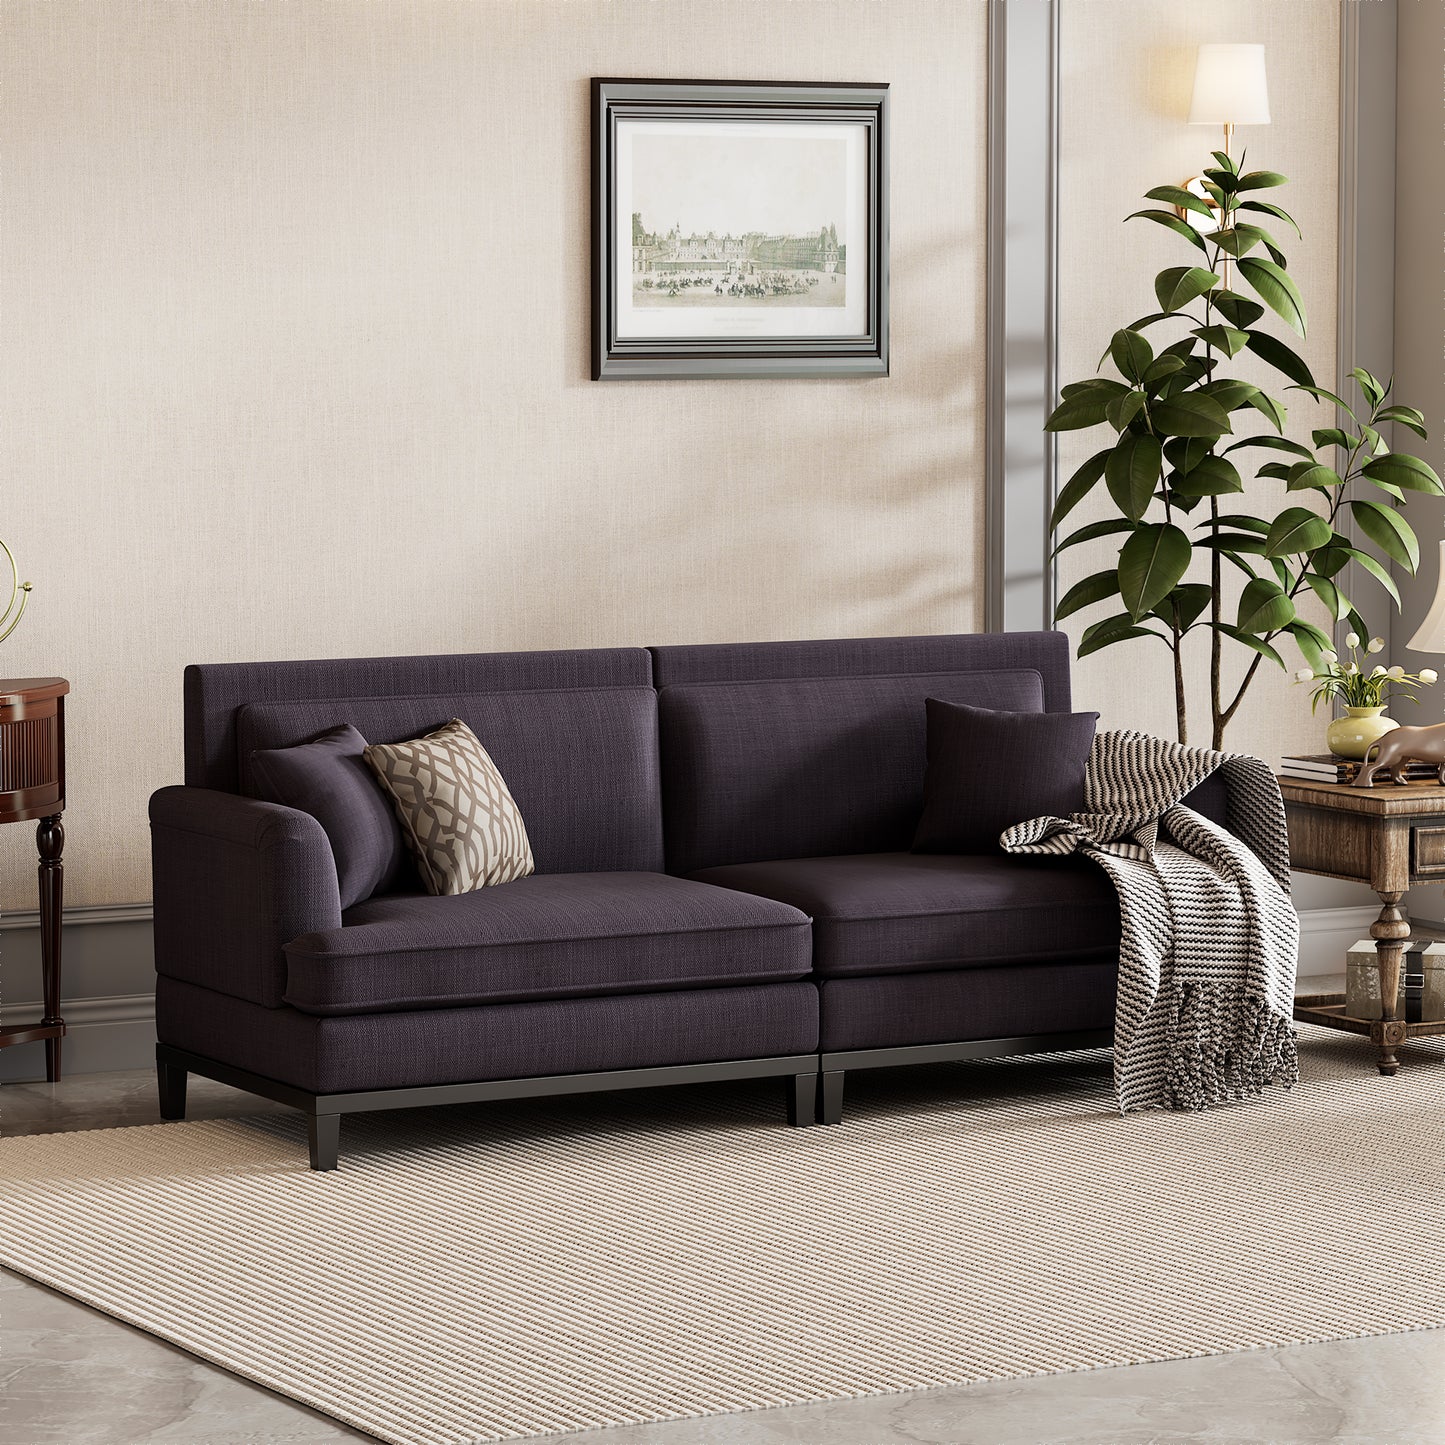 Grau gepolstertes modernes Sofa mit Holzbeinen und zwei Kissen